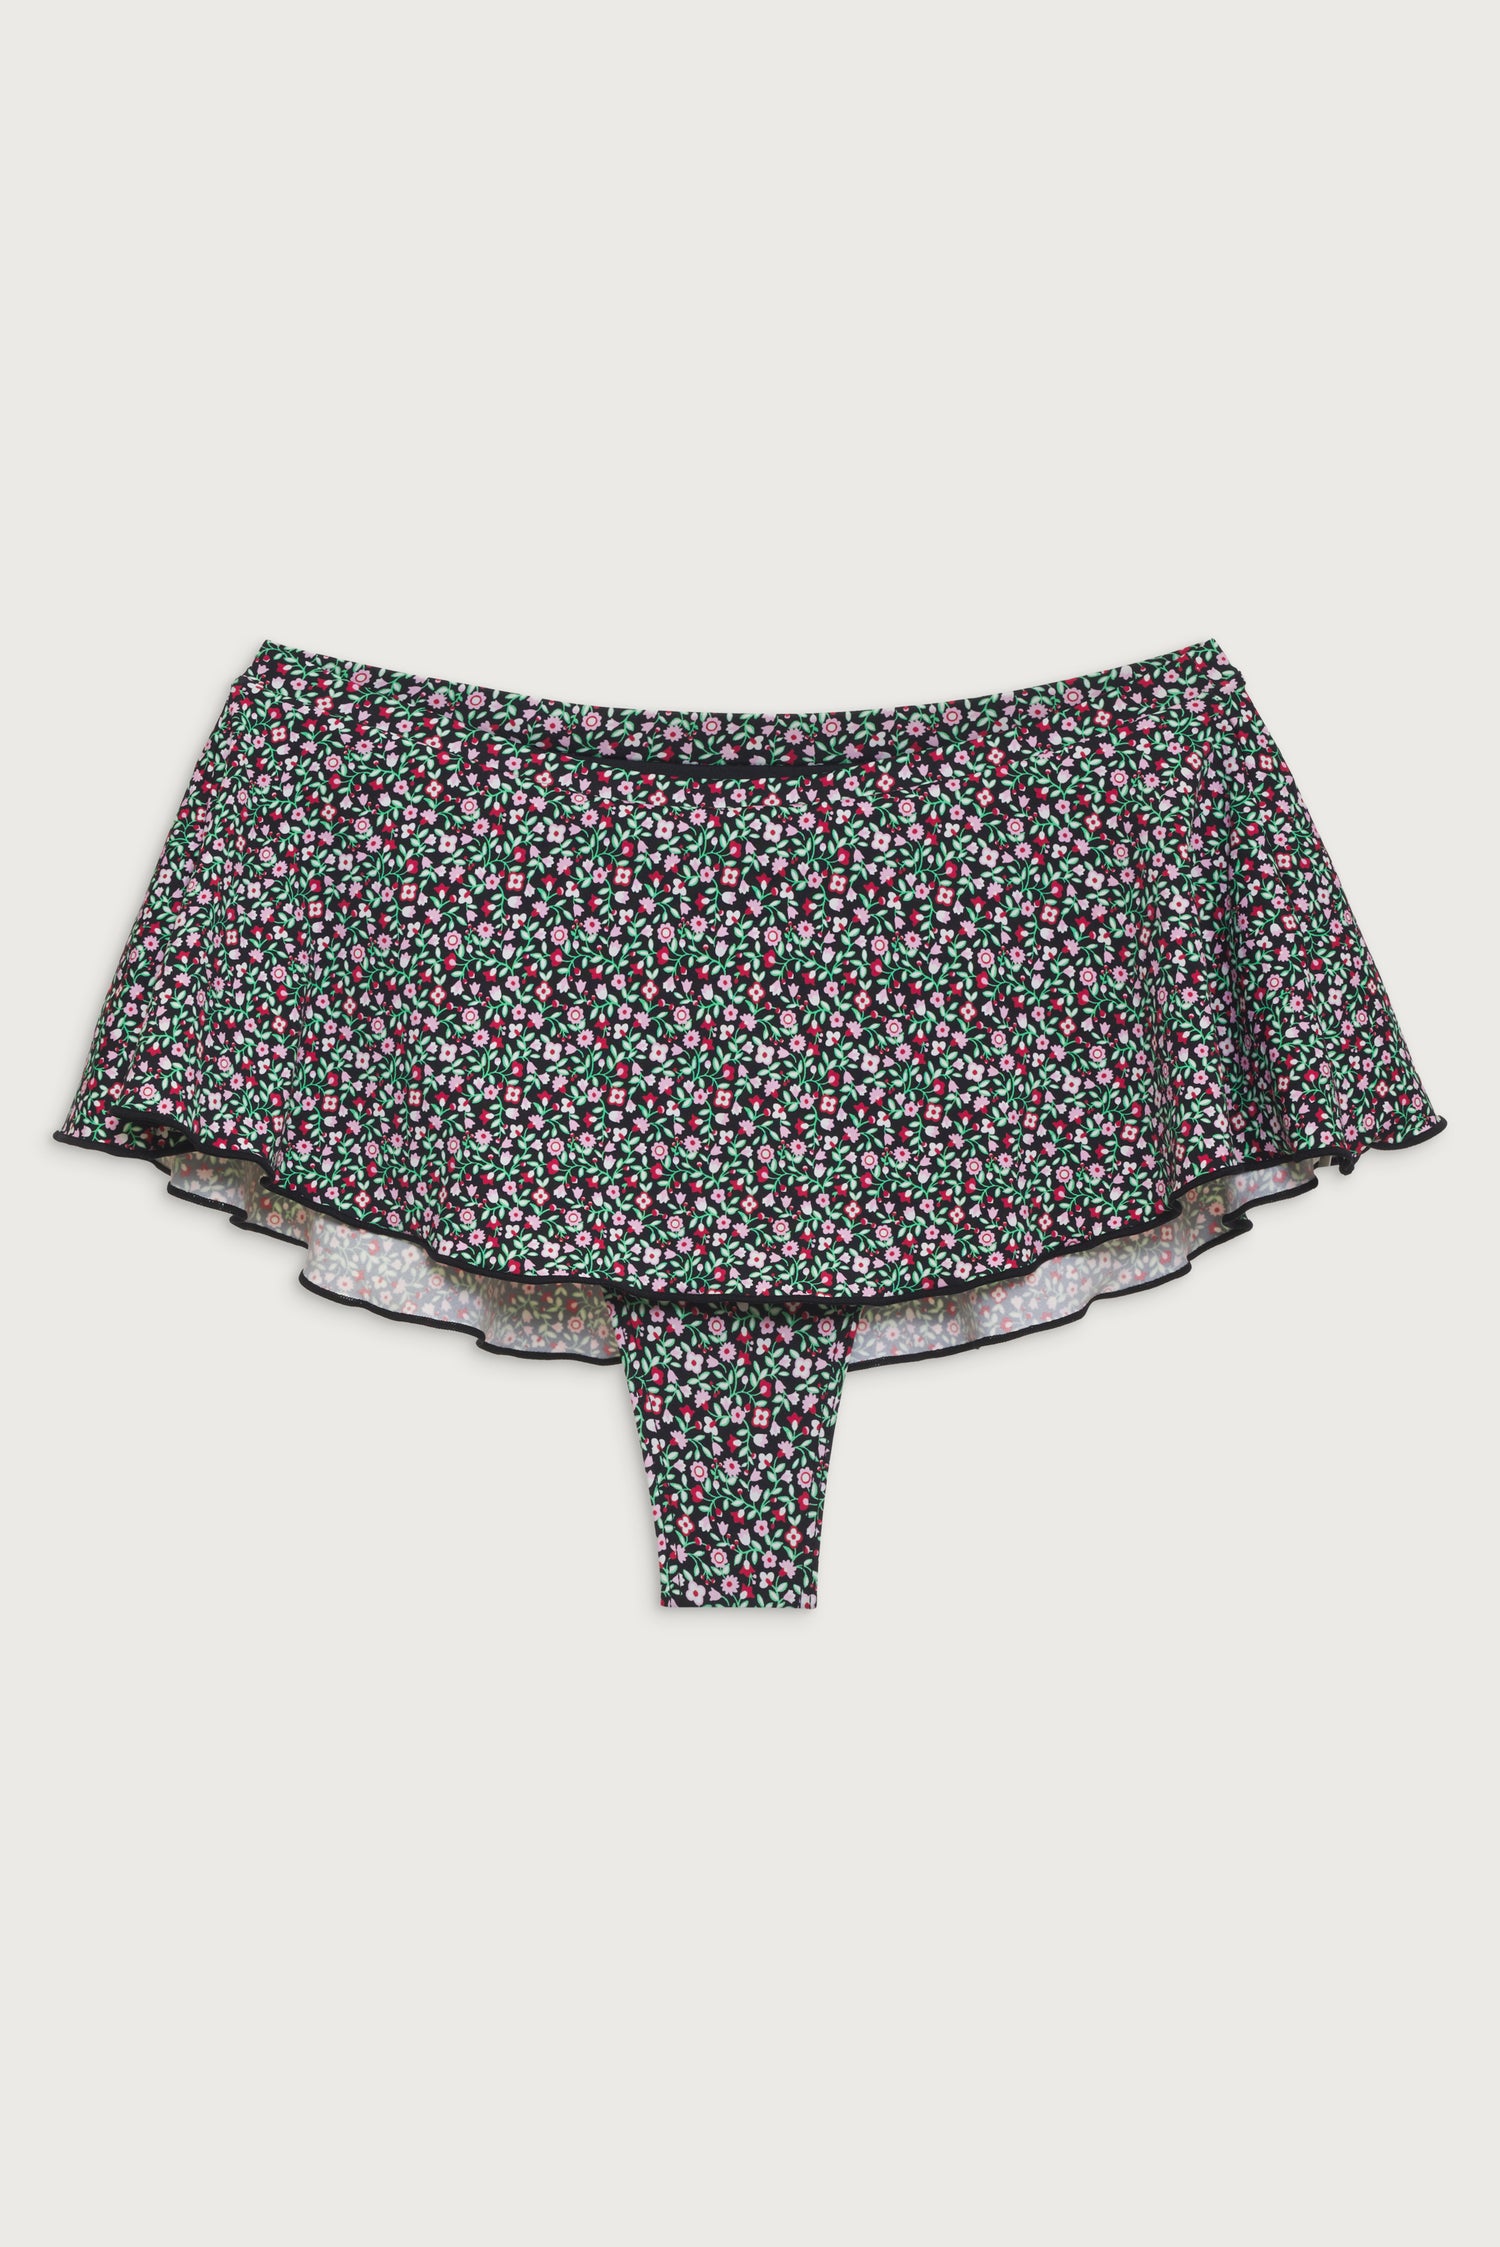 Izabella Floral Swim Skirt Bikini Bottom - French Holiday